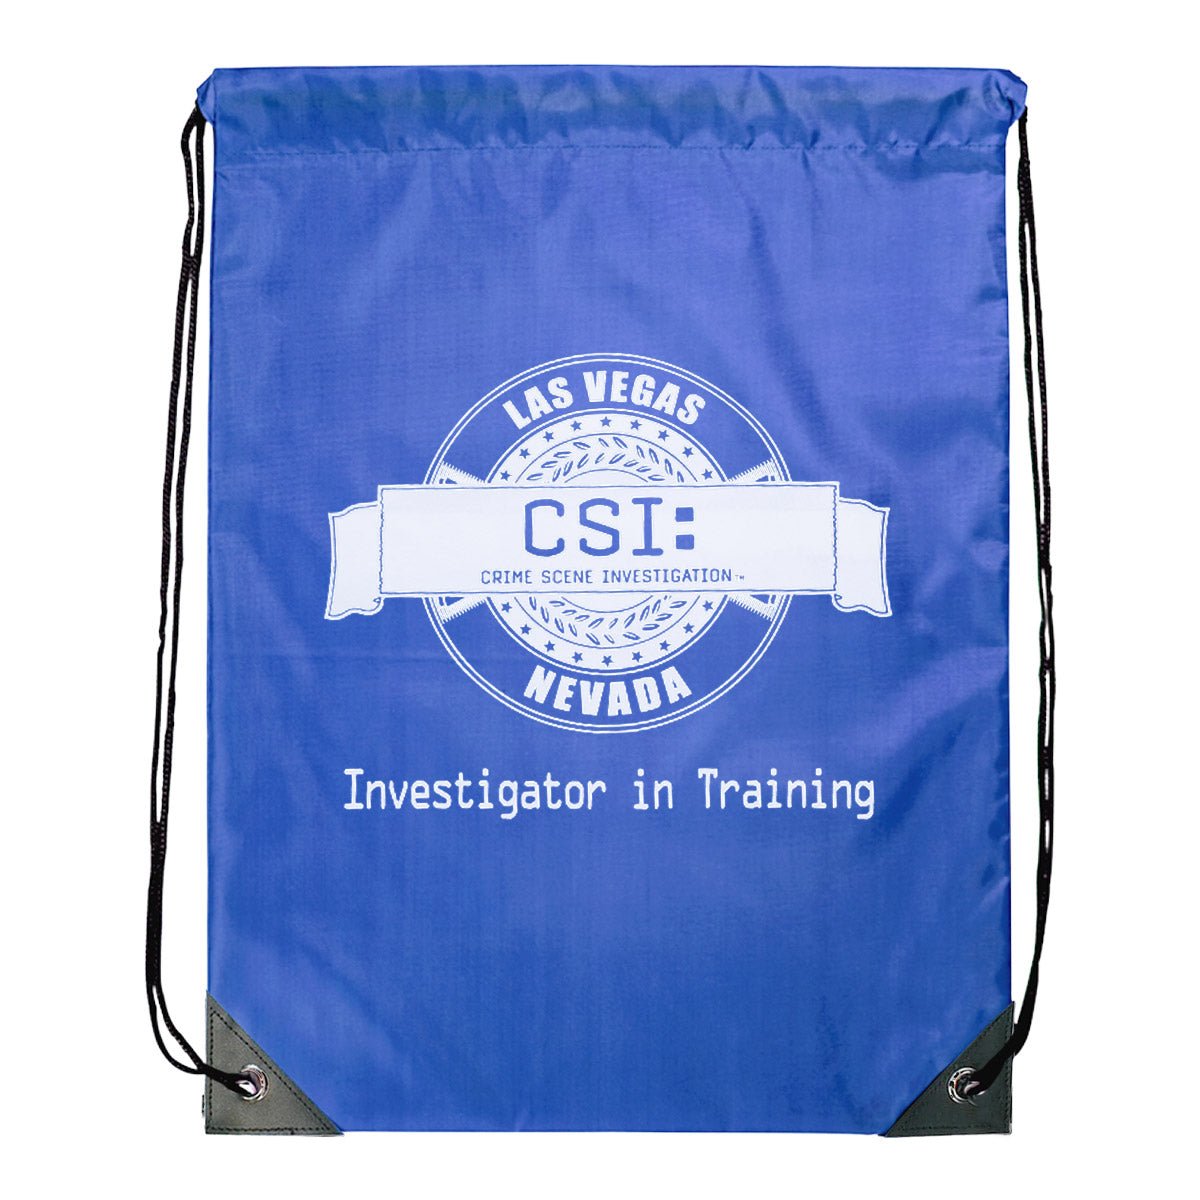 CSI: Crime Scene Investigation Investigator in Training Drawstring Bag - Paramount Shop